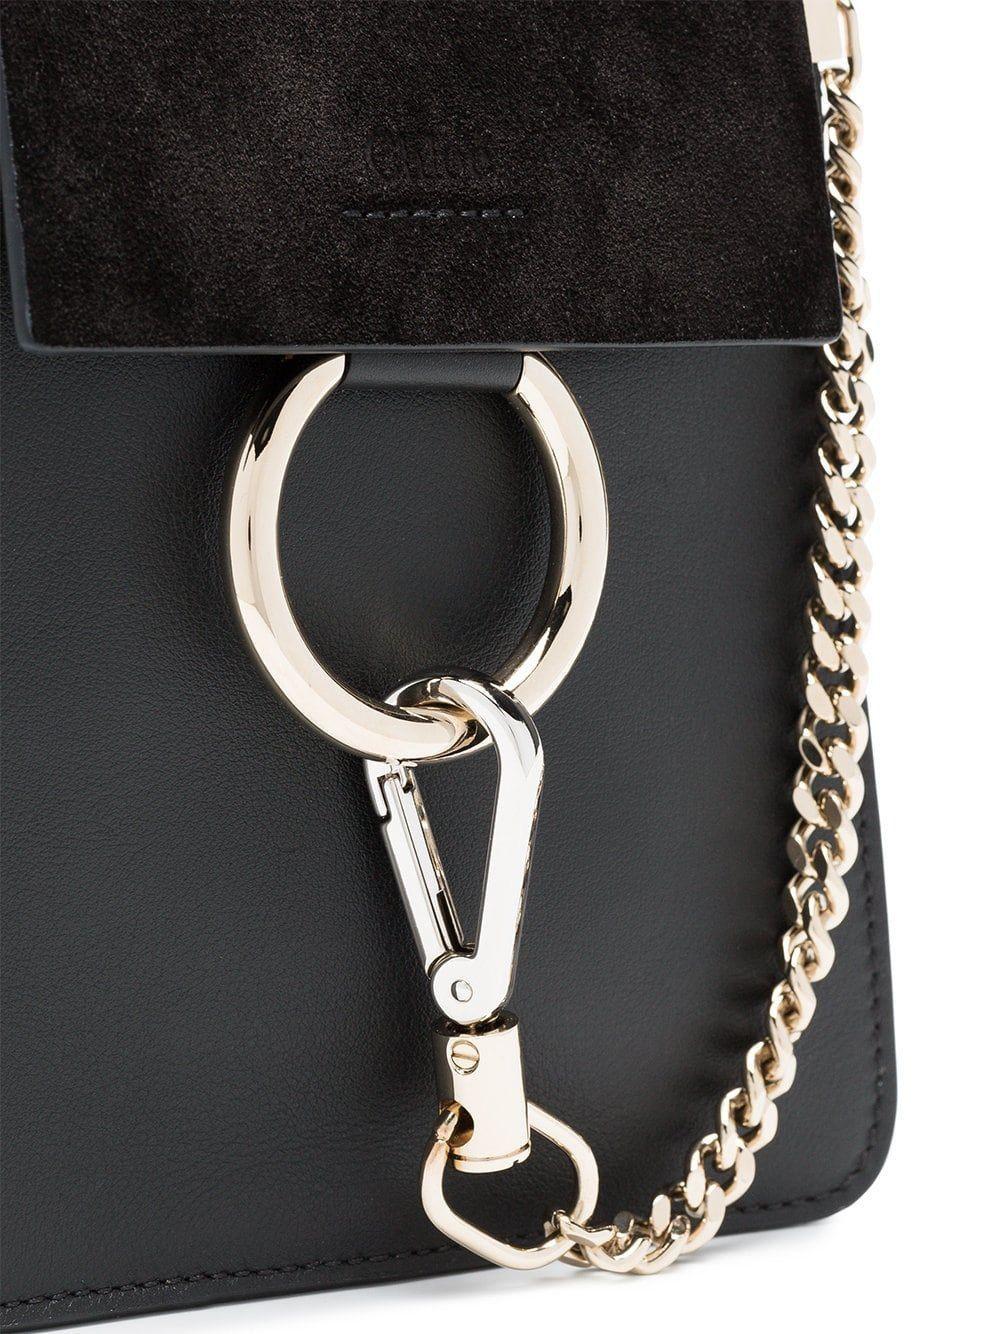 Chloé Black Faye Small Leather Bracelet Bag